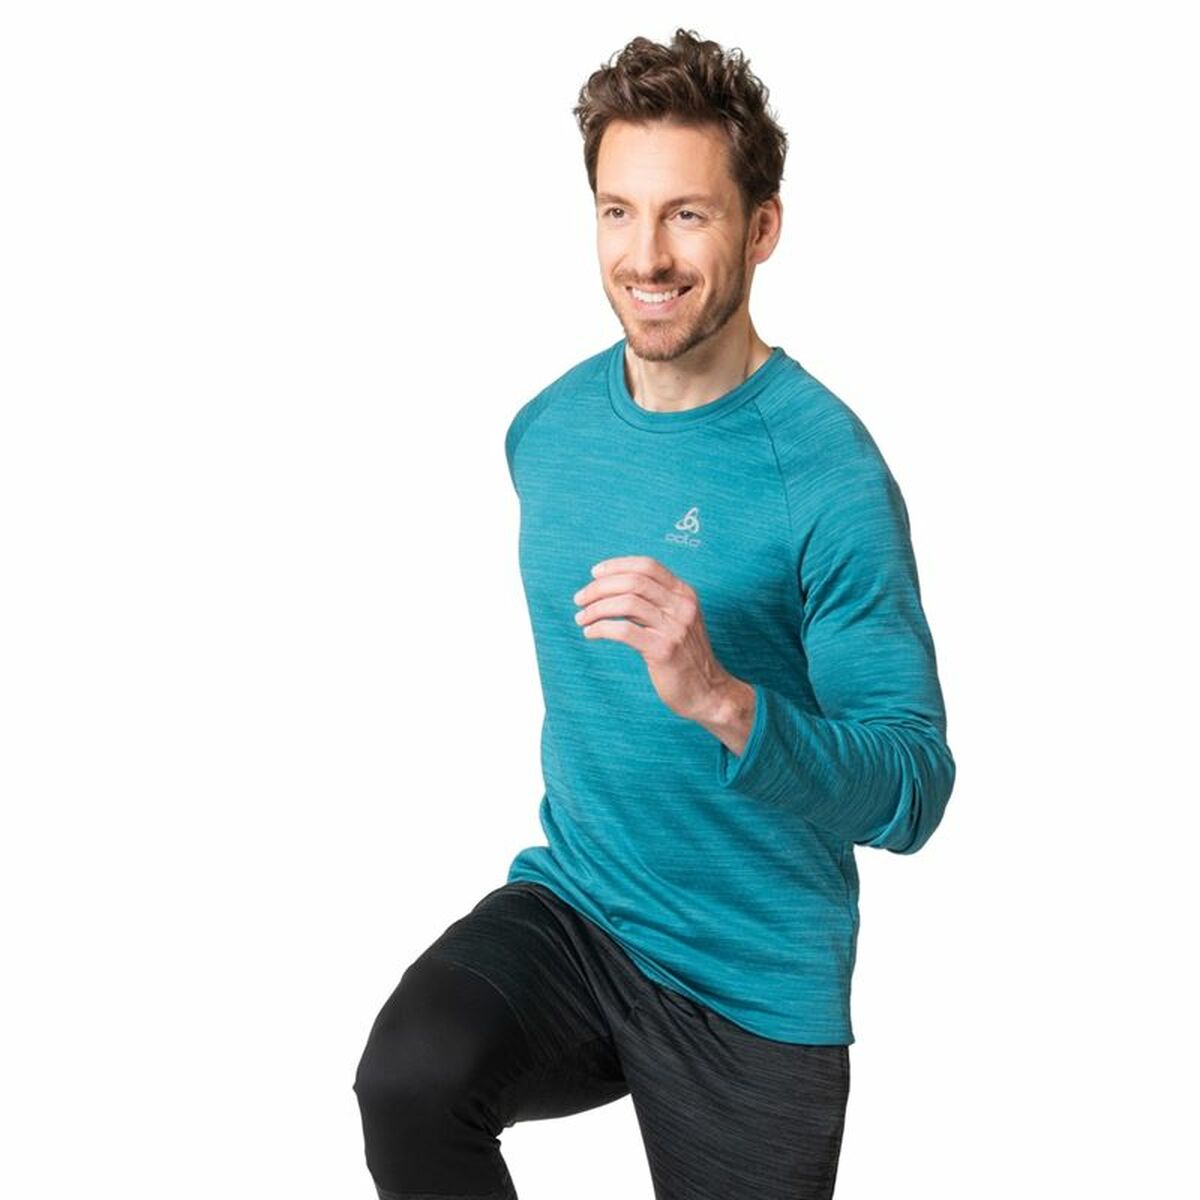 Osta tuote Unisex pitkähihainen paita Odlo Essential Thermal Sininen (Koko: L) verkkokaupastamme Korhone: Urheilu & Vapaa-aika 10% alennuksella koodilla KORHONE